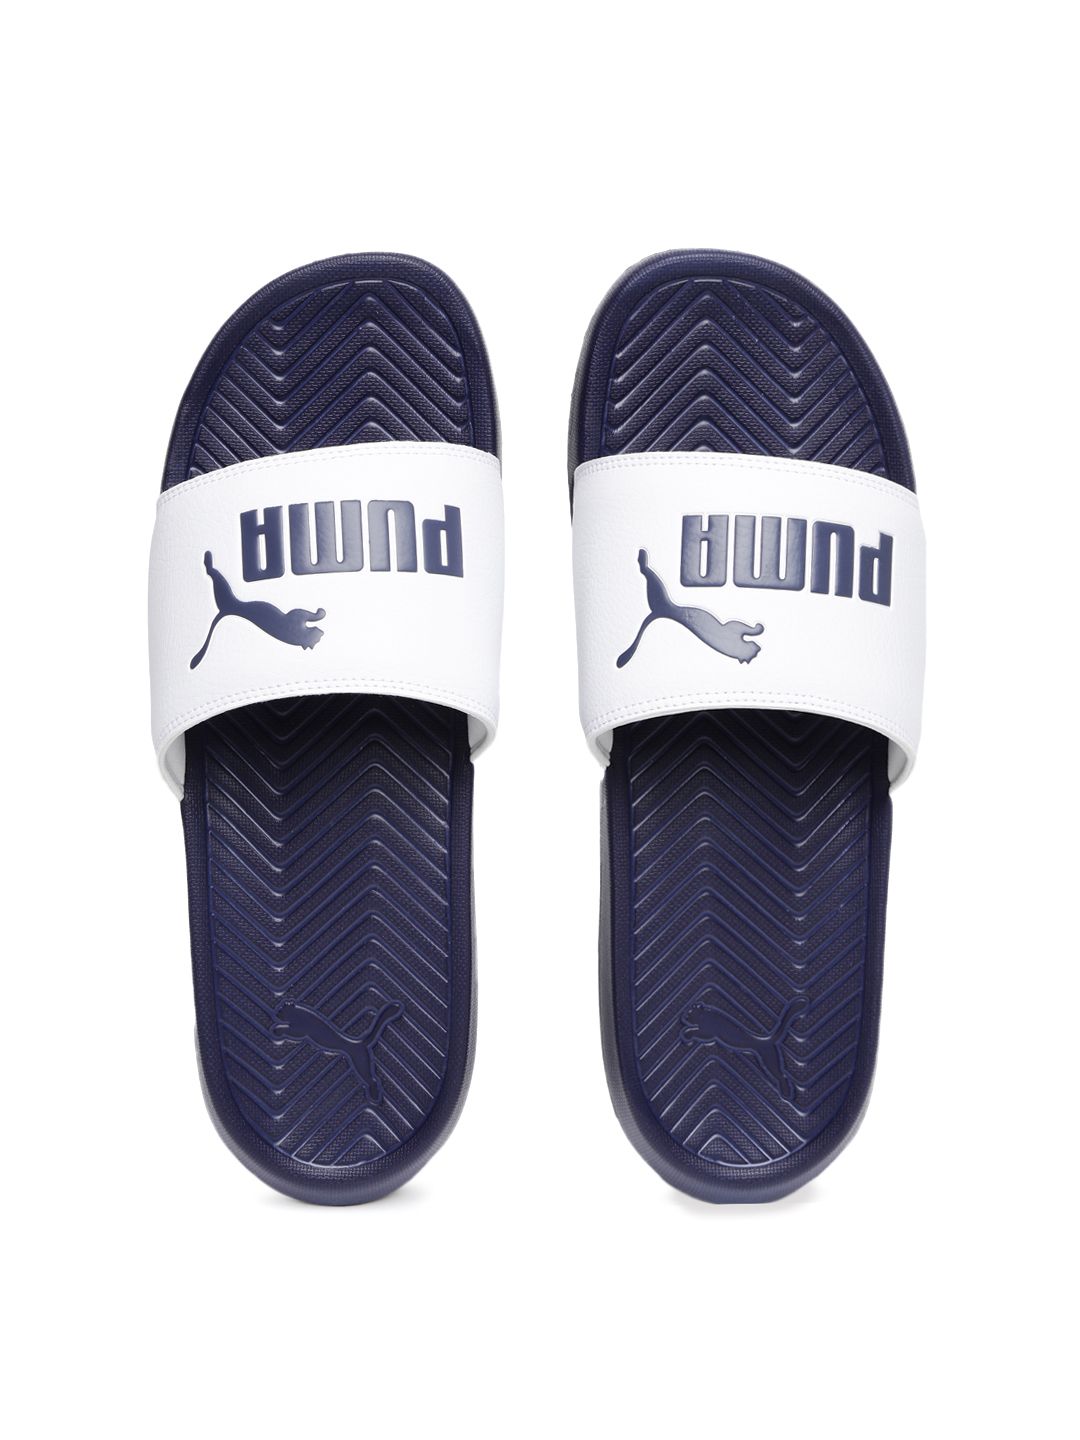 puma suede shoes online